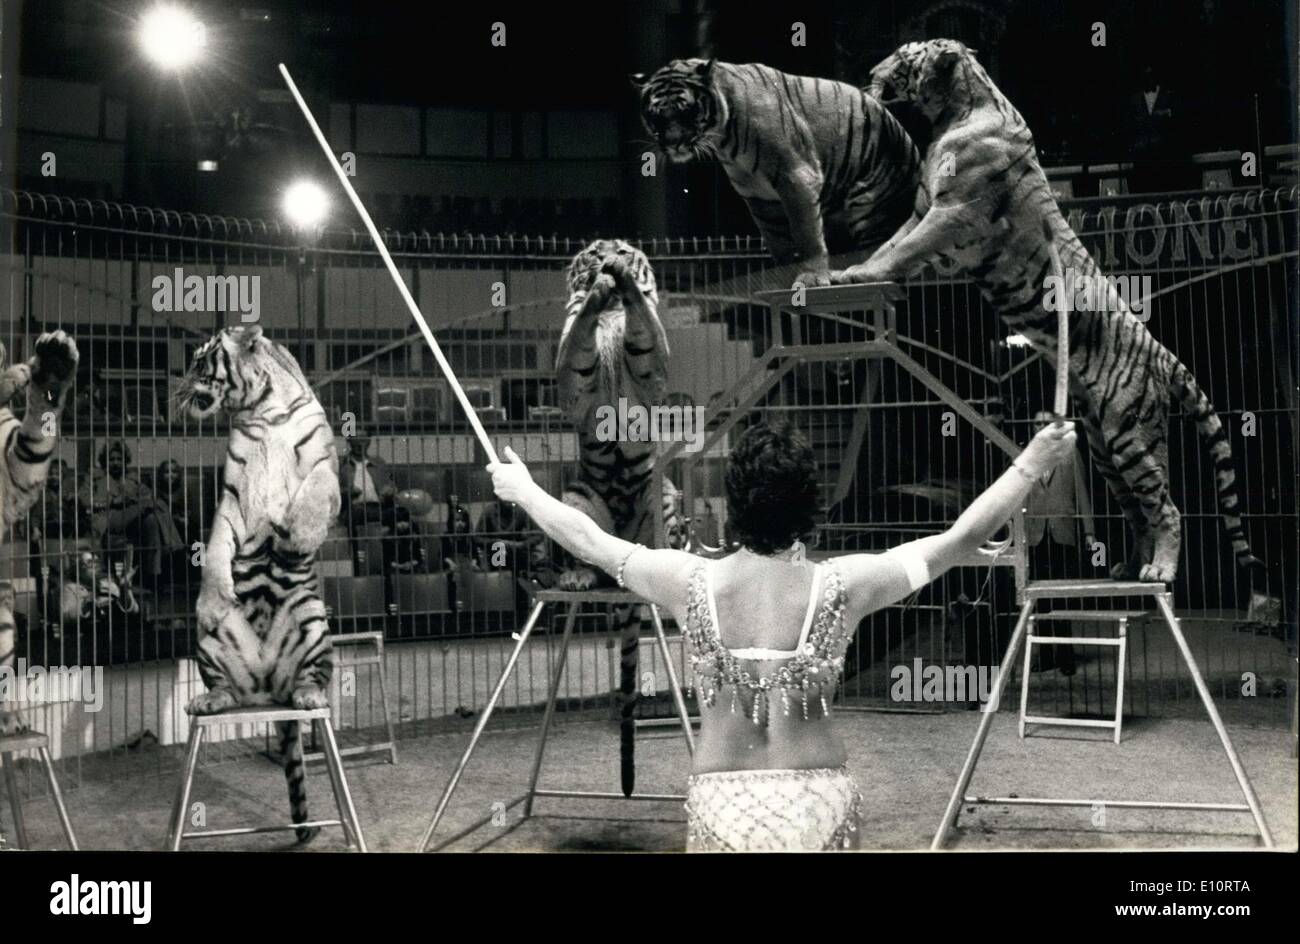 28 octobre, 1973 - Pour la première fois dans le célèbre cirque d'hiver Bouglione, une femme s'aventure dans le grand chat cage. Élève de Firmin Bouglione, Catherine Blankart, fille d'un banquier suisse, présente un groupe de 7 tigres gourmette qu'elle a gracieusement fait exécuter pour l'auditoire's delight. Catherine Blankart et ses tigres dans le grand chat dans la cage Bouglione cirque à Paris. Banque D'Images